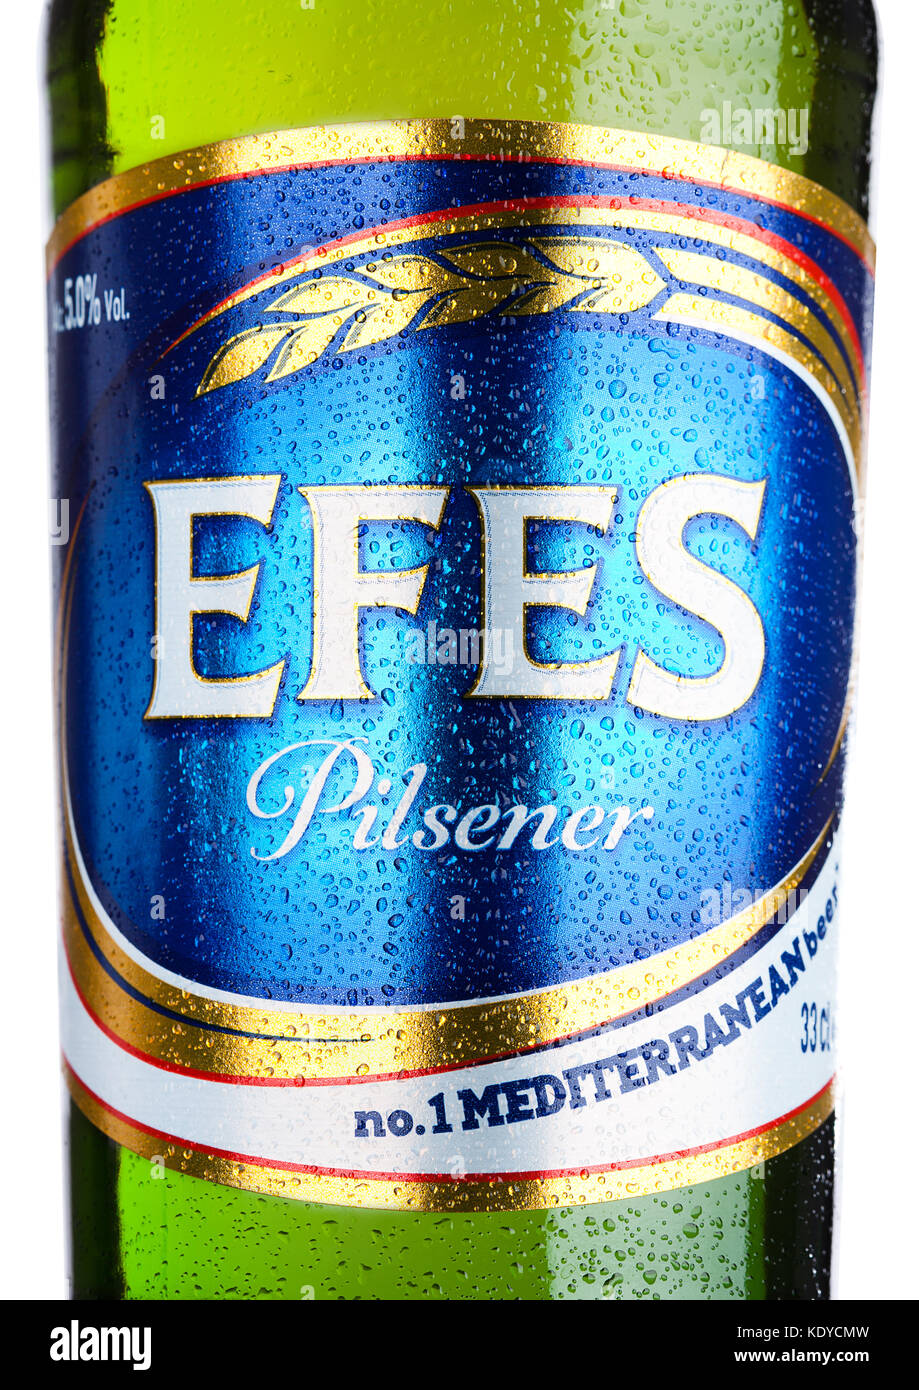 LONDON, UK - 23. MÄRZ 2017 : Flasche Efes Pilsner Bier auf weißem Hintergrund. Efes Pilsener ist das Flaggschiff-Produkt dieses Unternehmens und das populärste Stockfoto